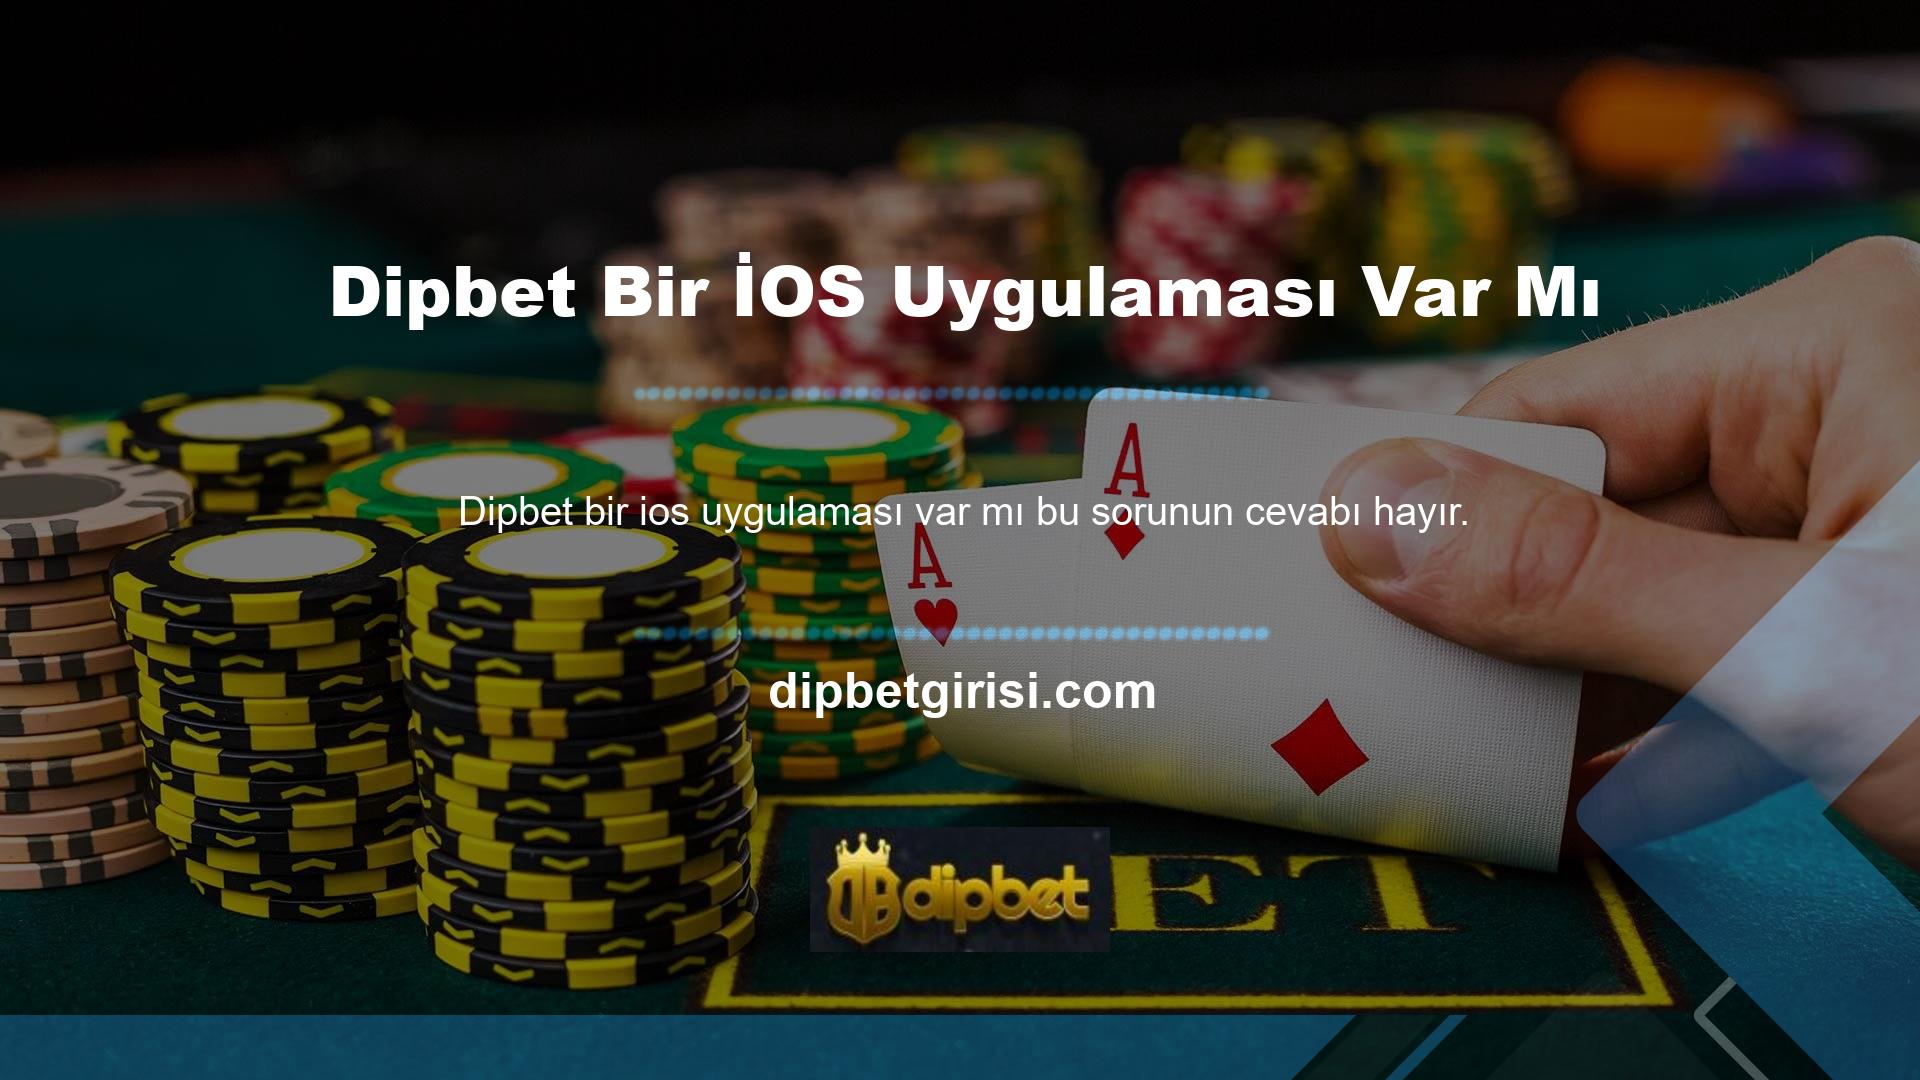 ” Biraz araştırma yaptıktan sonra Dipbet iOS uygulamasında şu anda çalışmayan bir sorun olduğu ve bunu düzeltmenin bir yolu olmadığı sonucuna vardık